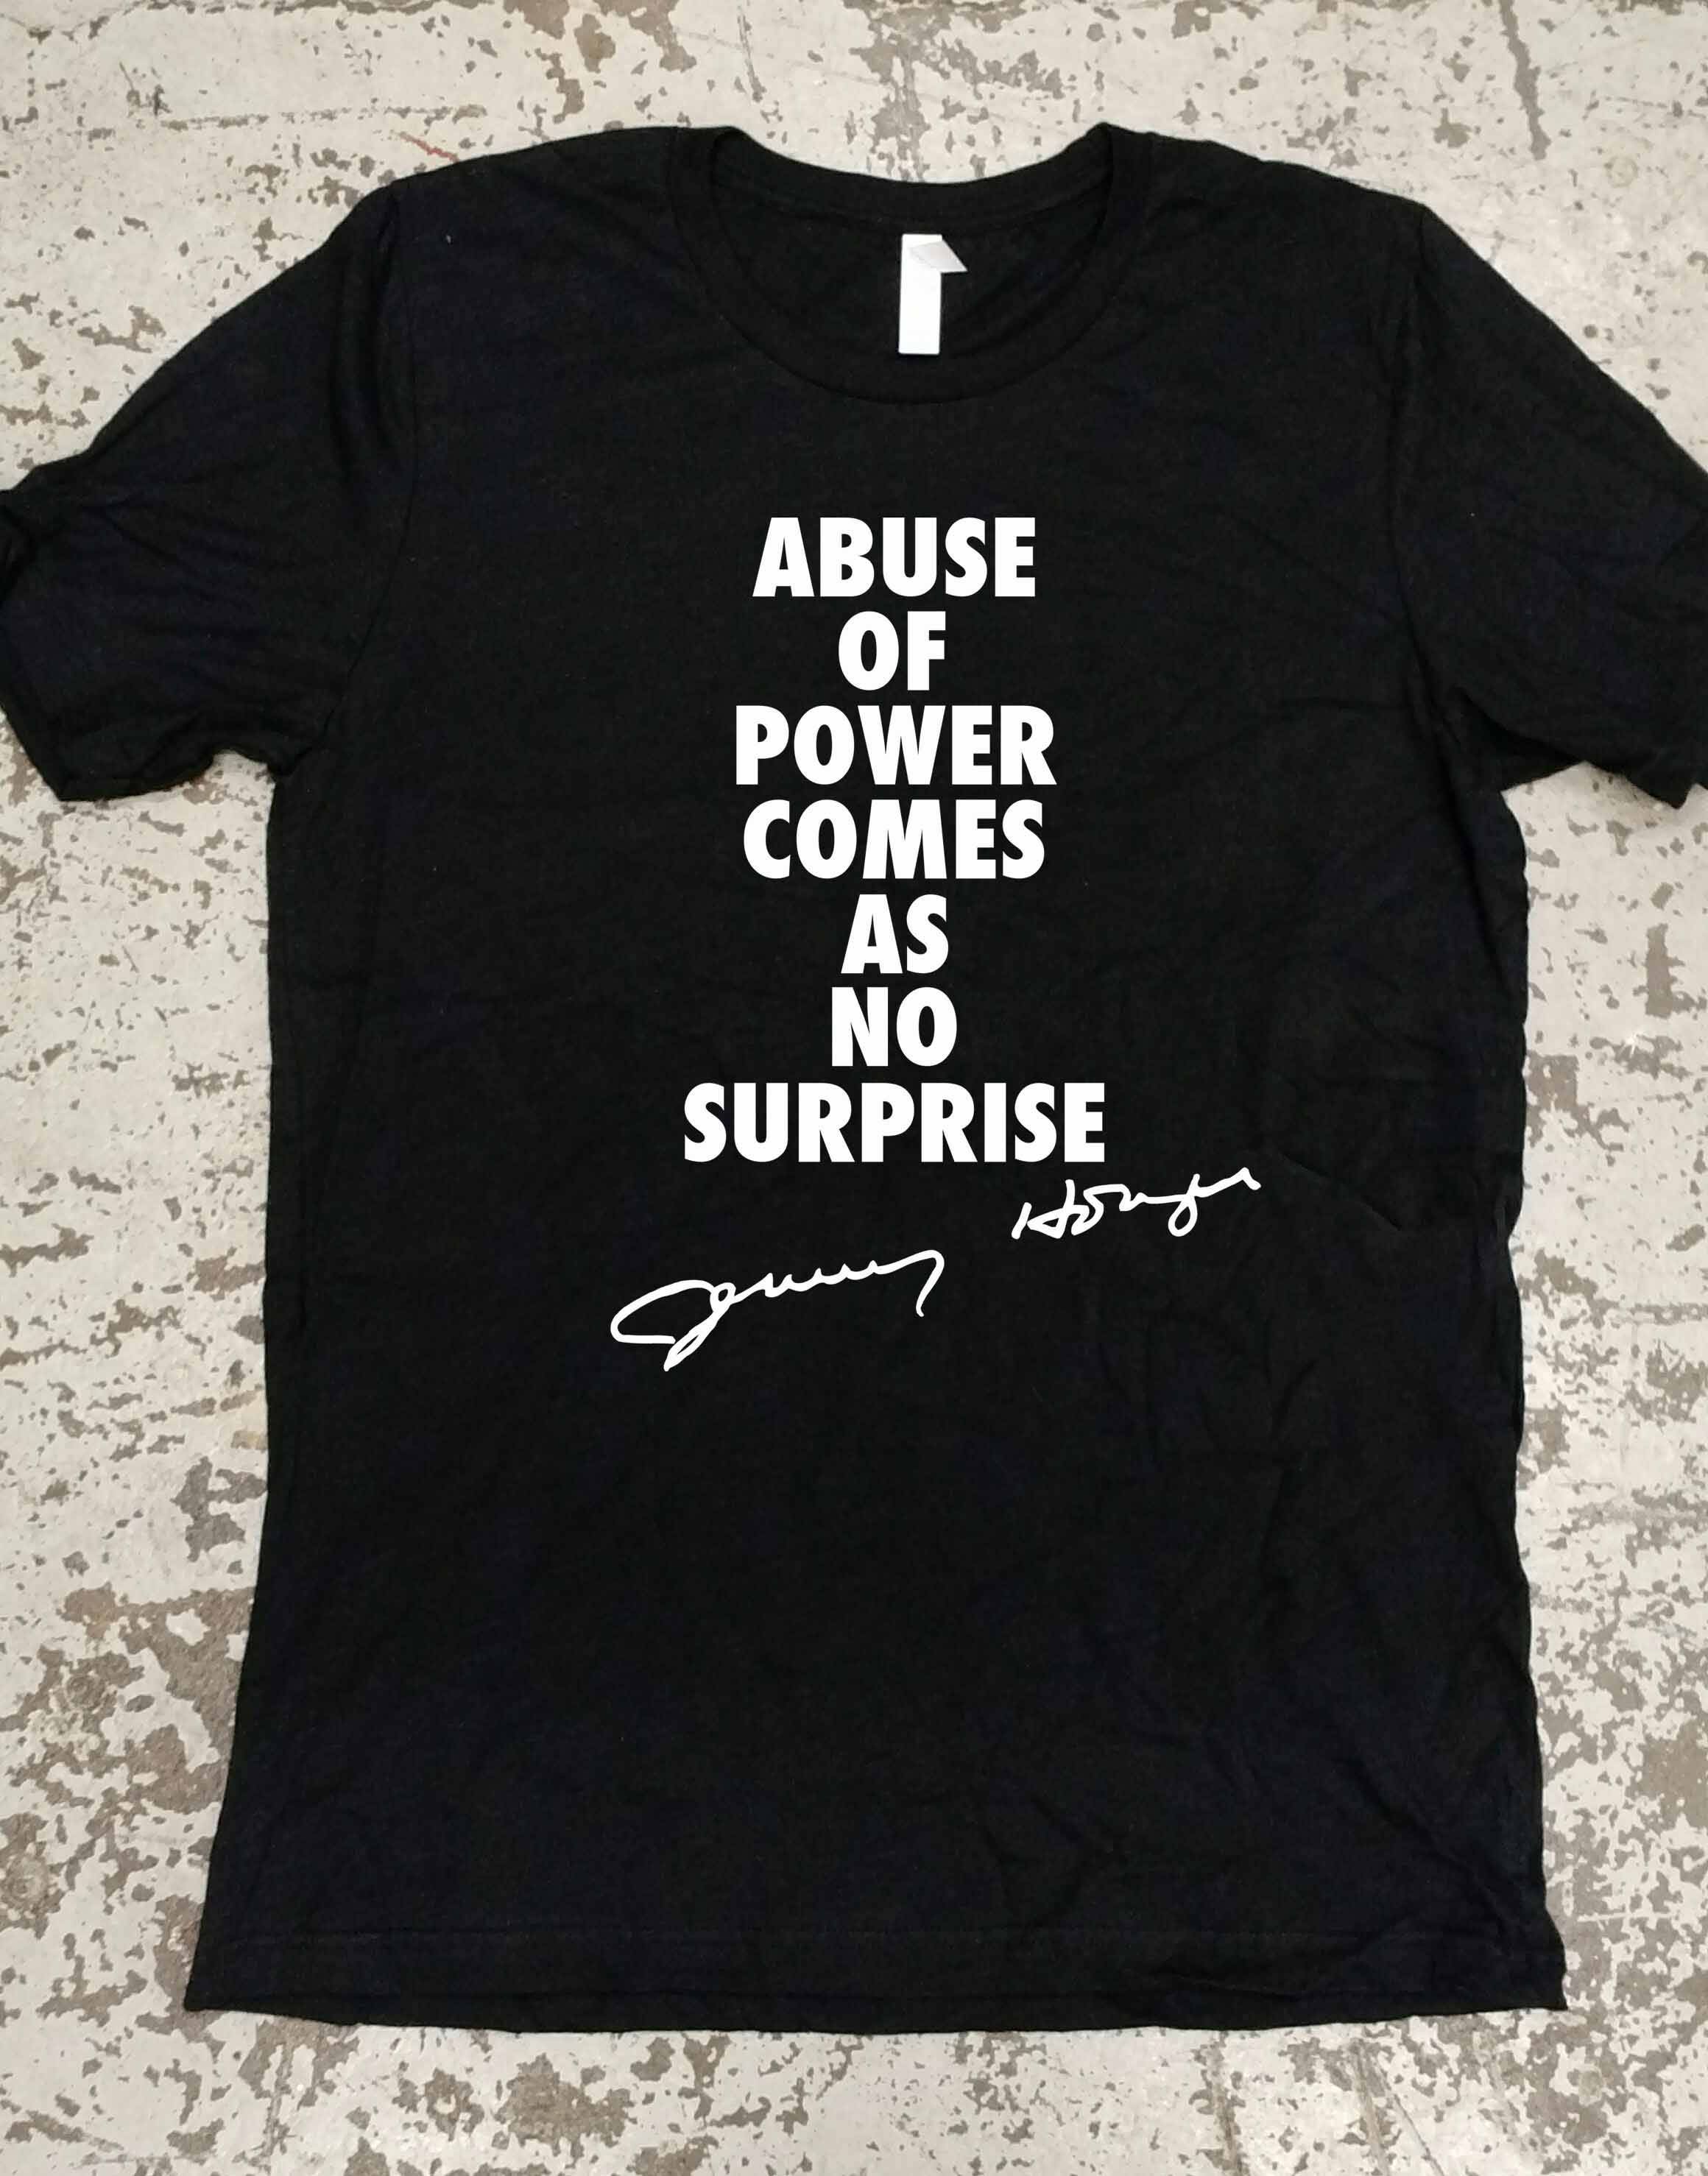 Jenny Holzer T-Shirt / Artist T-Shirt / Unisex Clothing | Etsy